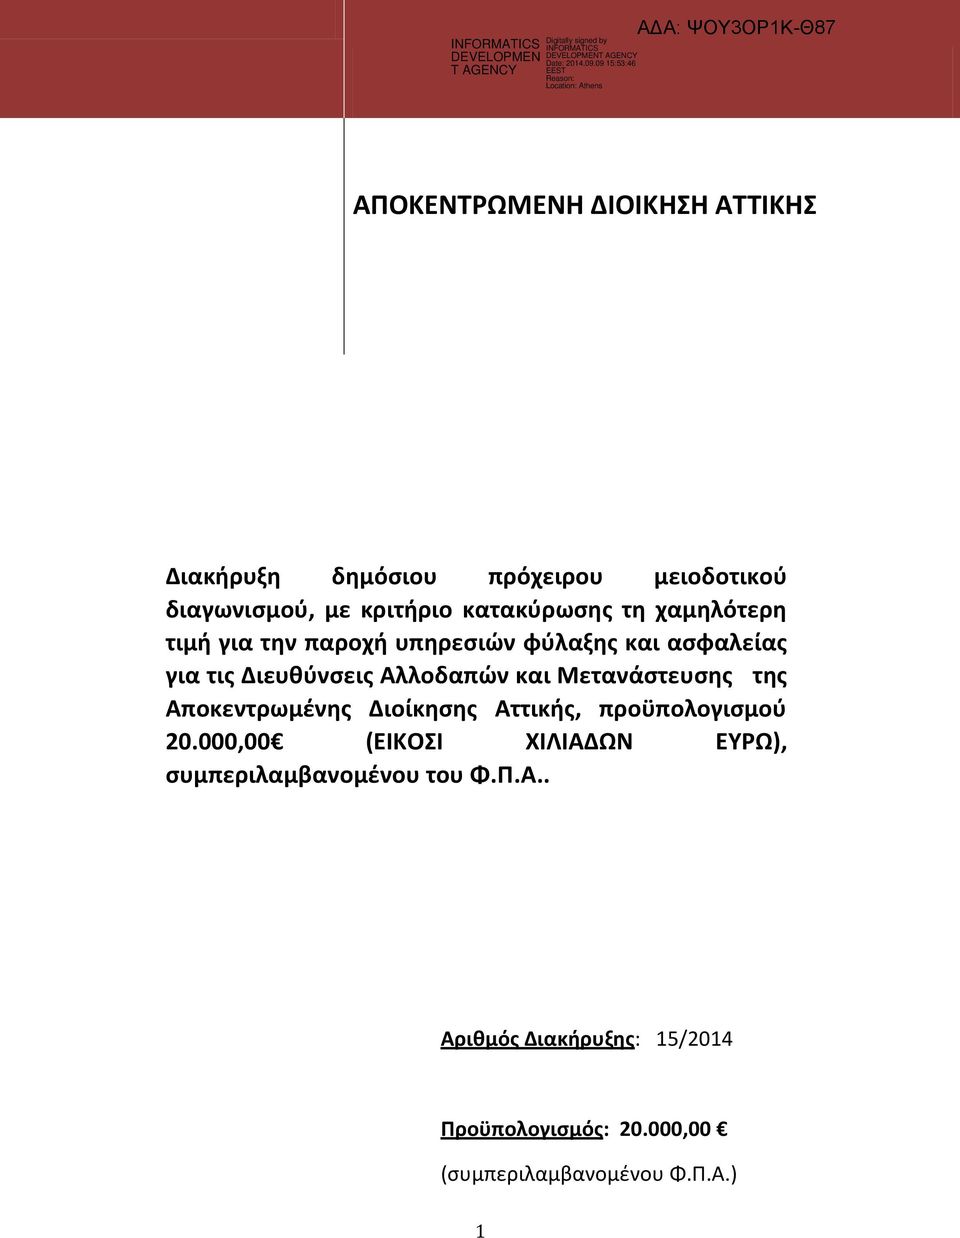 Αλλοδαπών και Μετανάστευσης της Αποκεντρωμένης Διοίκησης Αττικής, προϋπολογισμού 20.